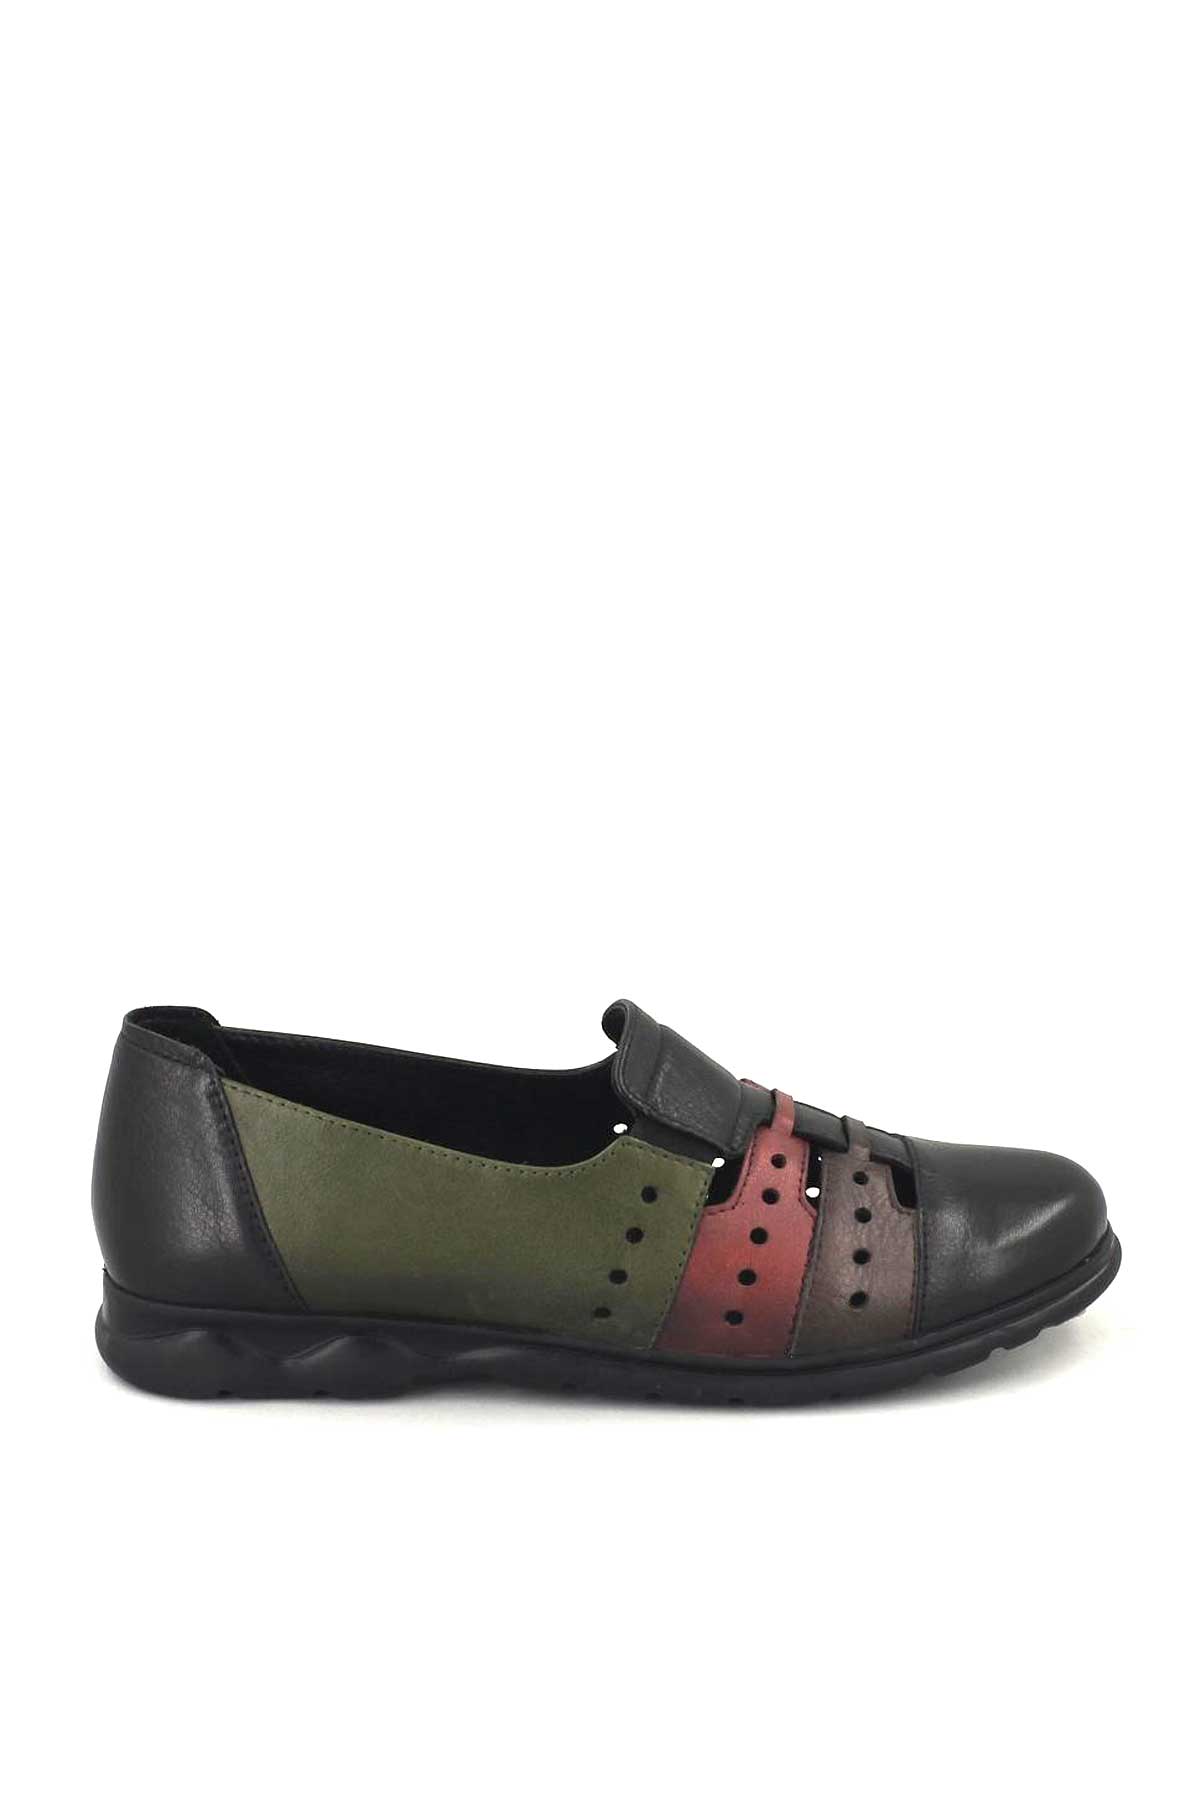 Kadın Yazlık Comfort Ayakkabı Siyah 1813672Y - Thumbnail